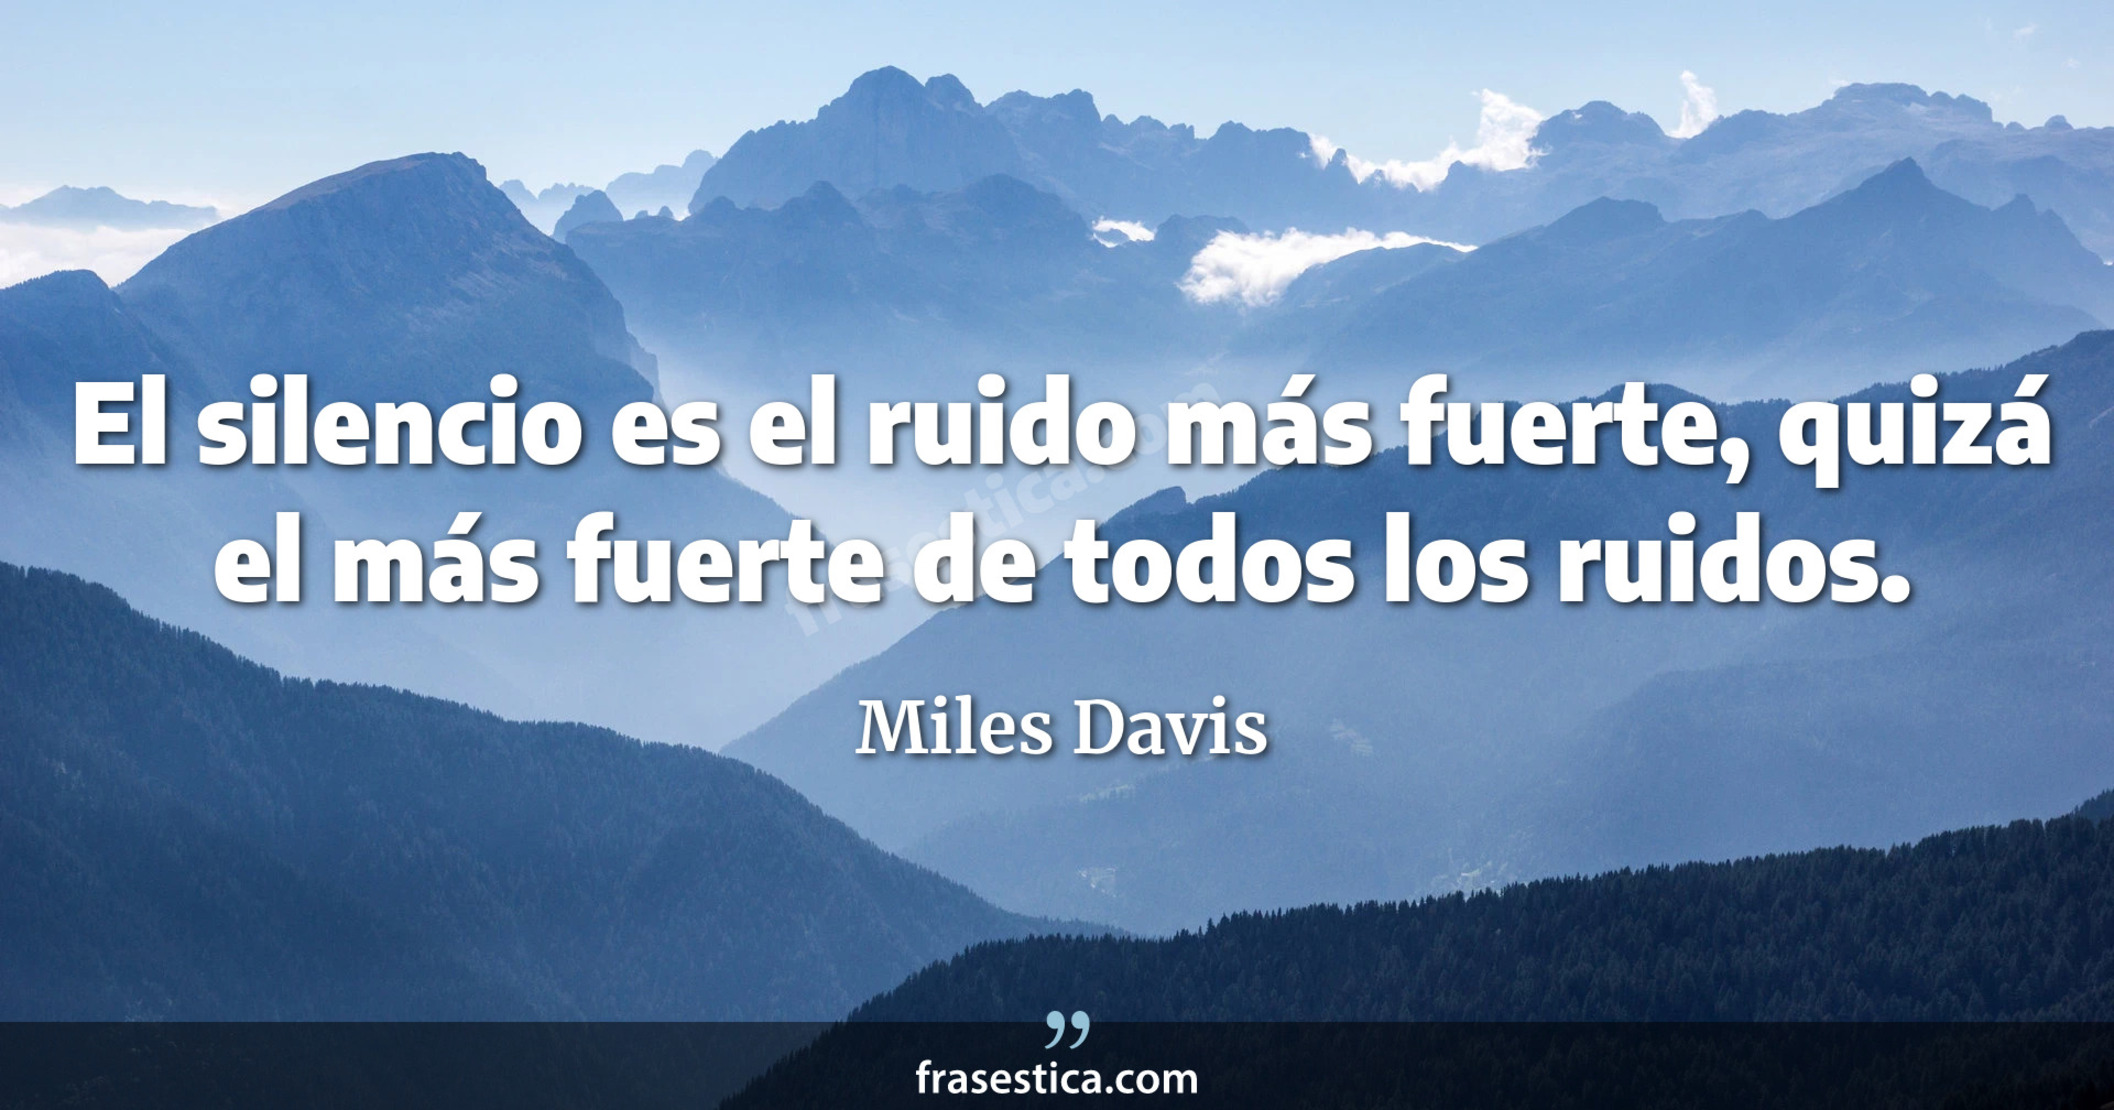 El silencio es el ruido más fuerte, quizá el más fuerte de todos los ruidos. - Miles Davis